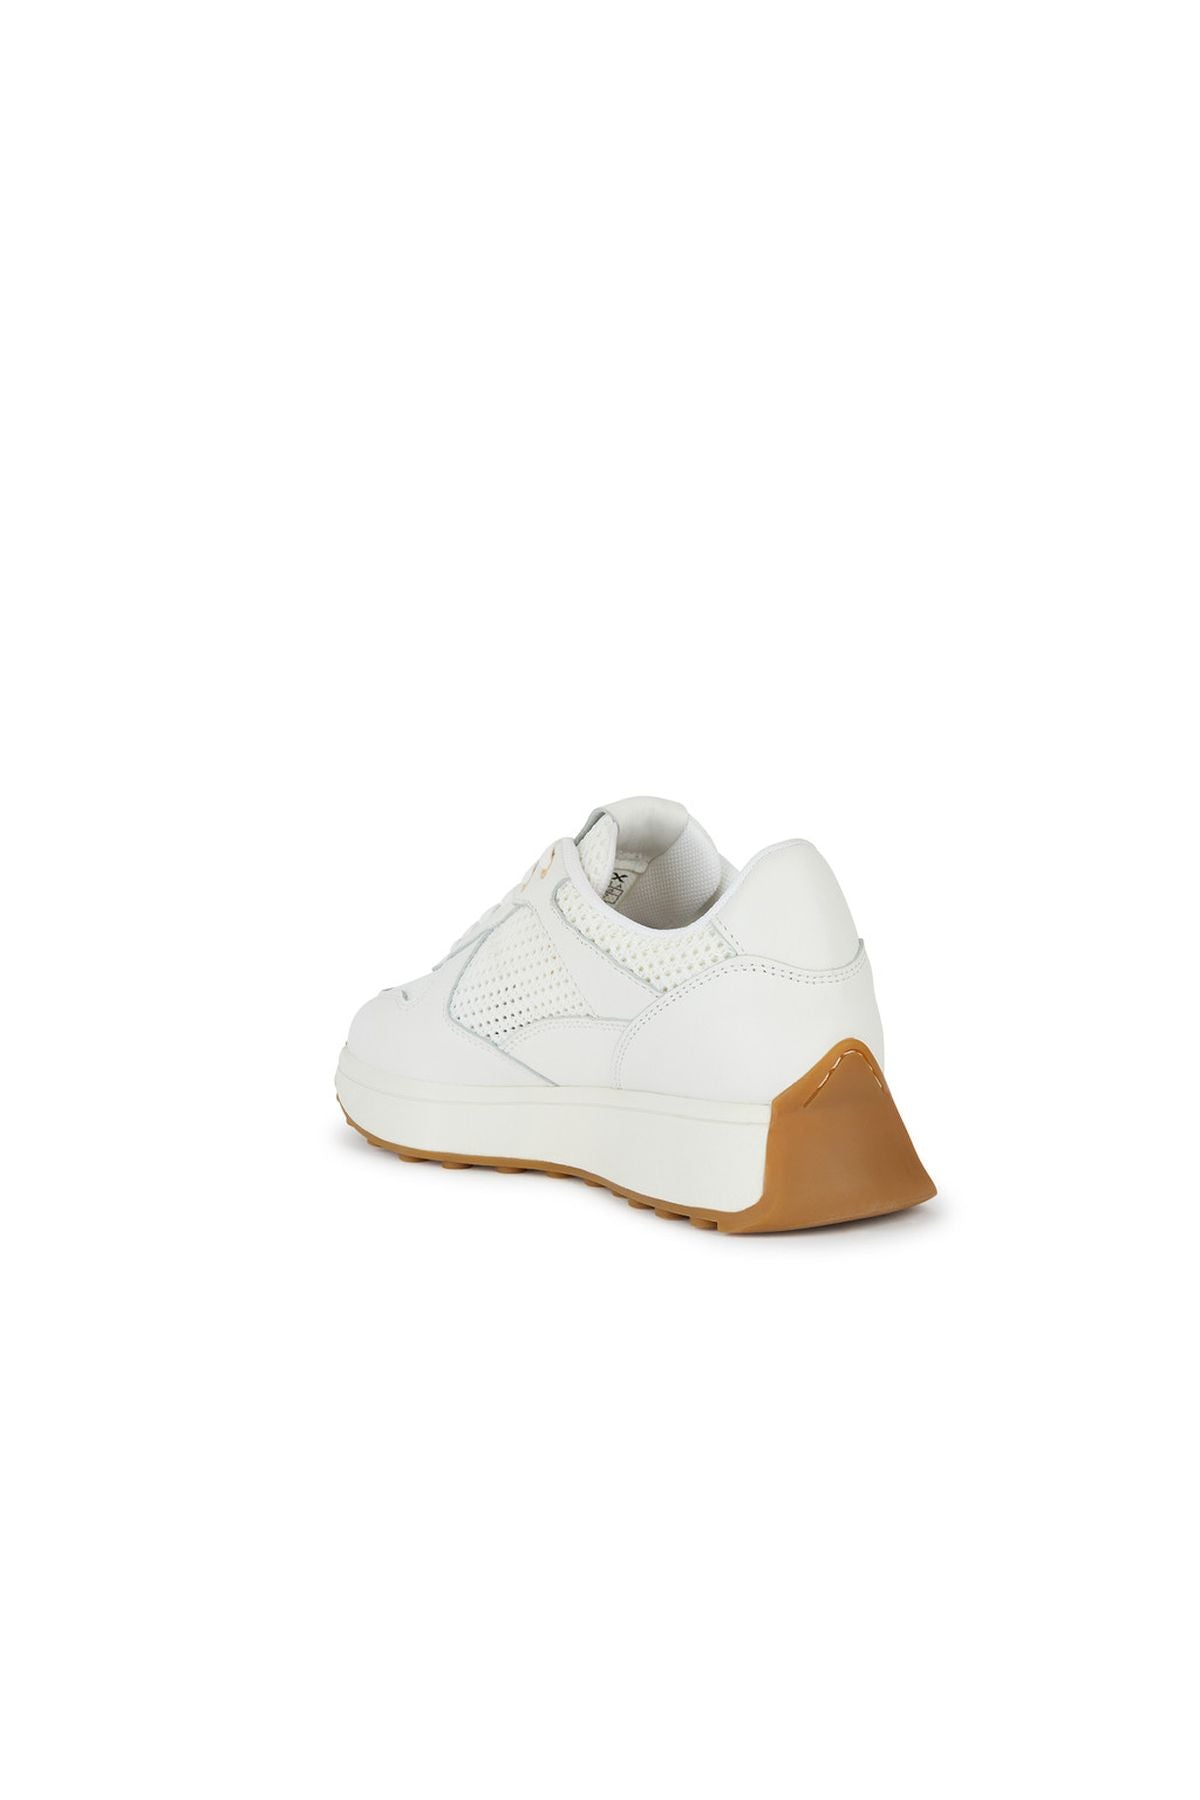 Geox Kadın Beyaz Amabel Bağcıklı Deri Sneaker